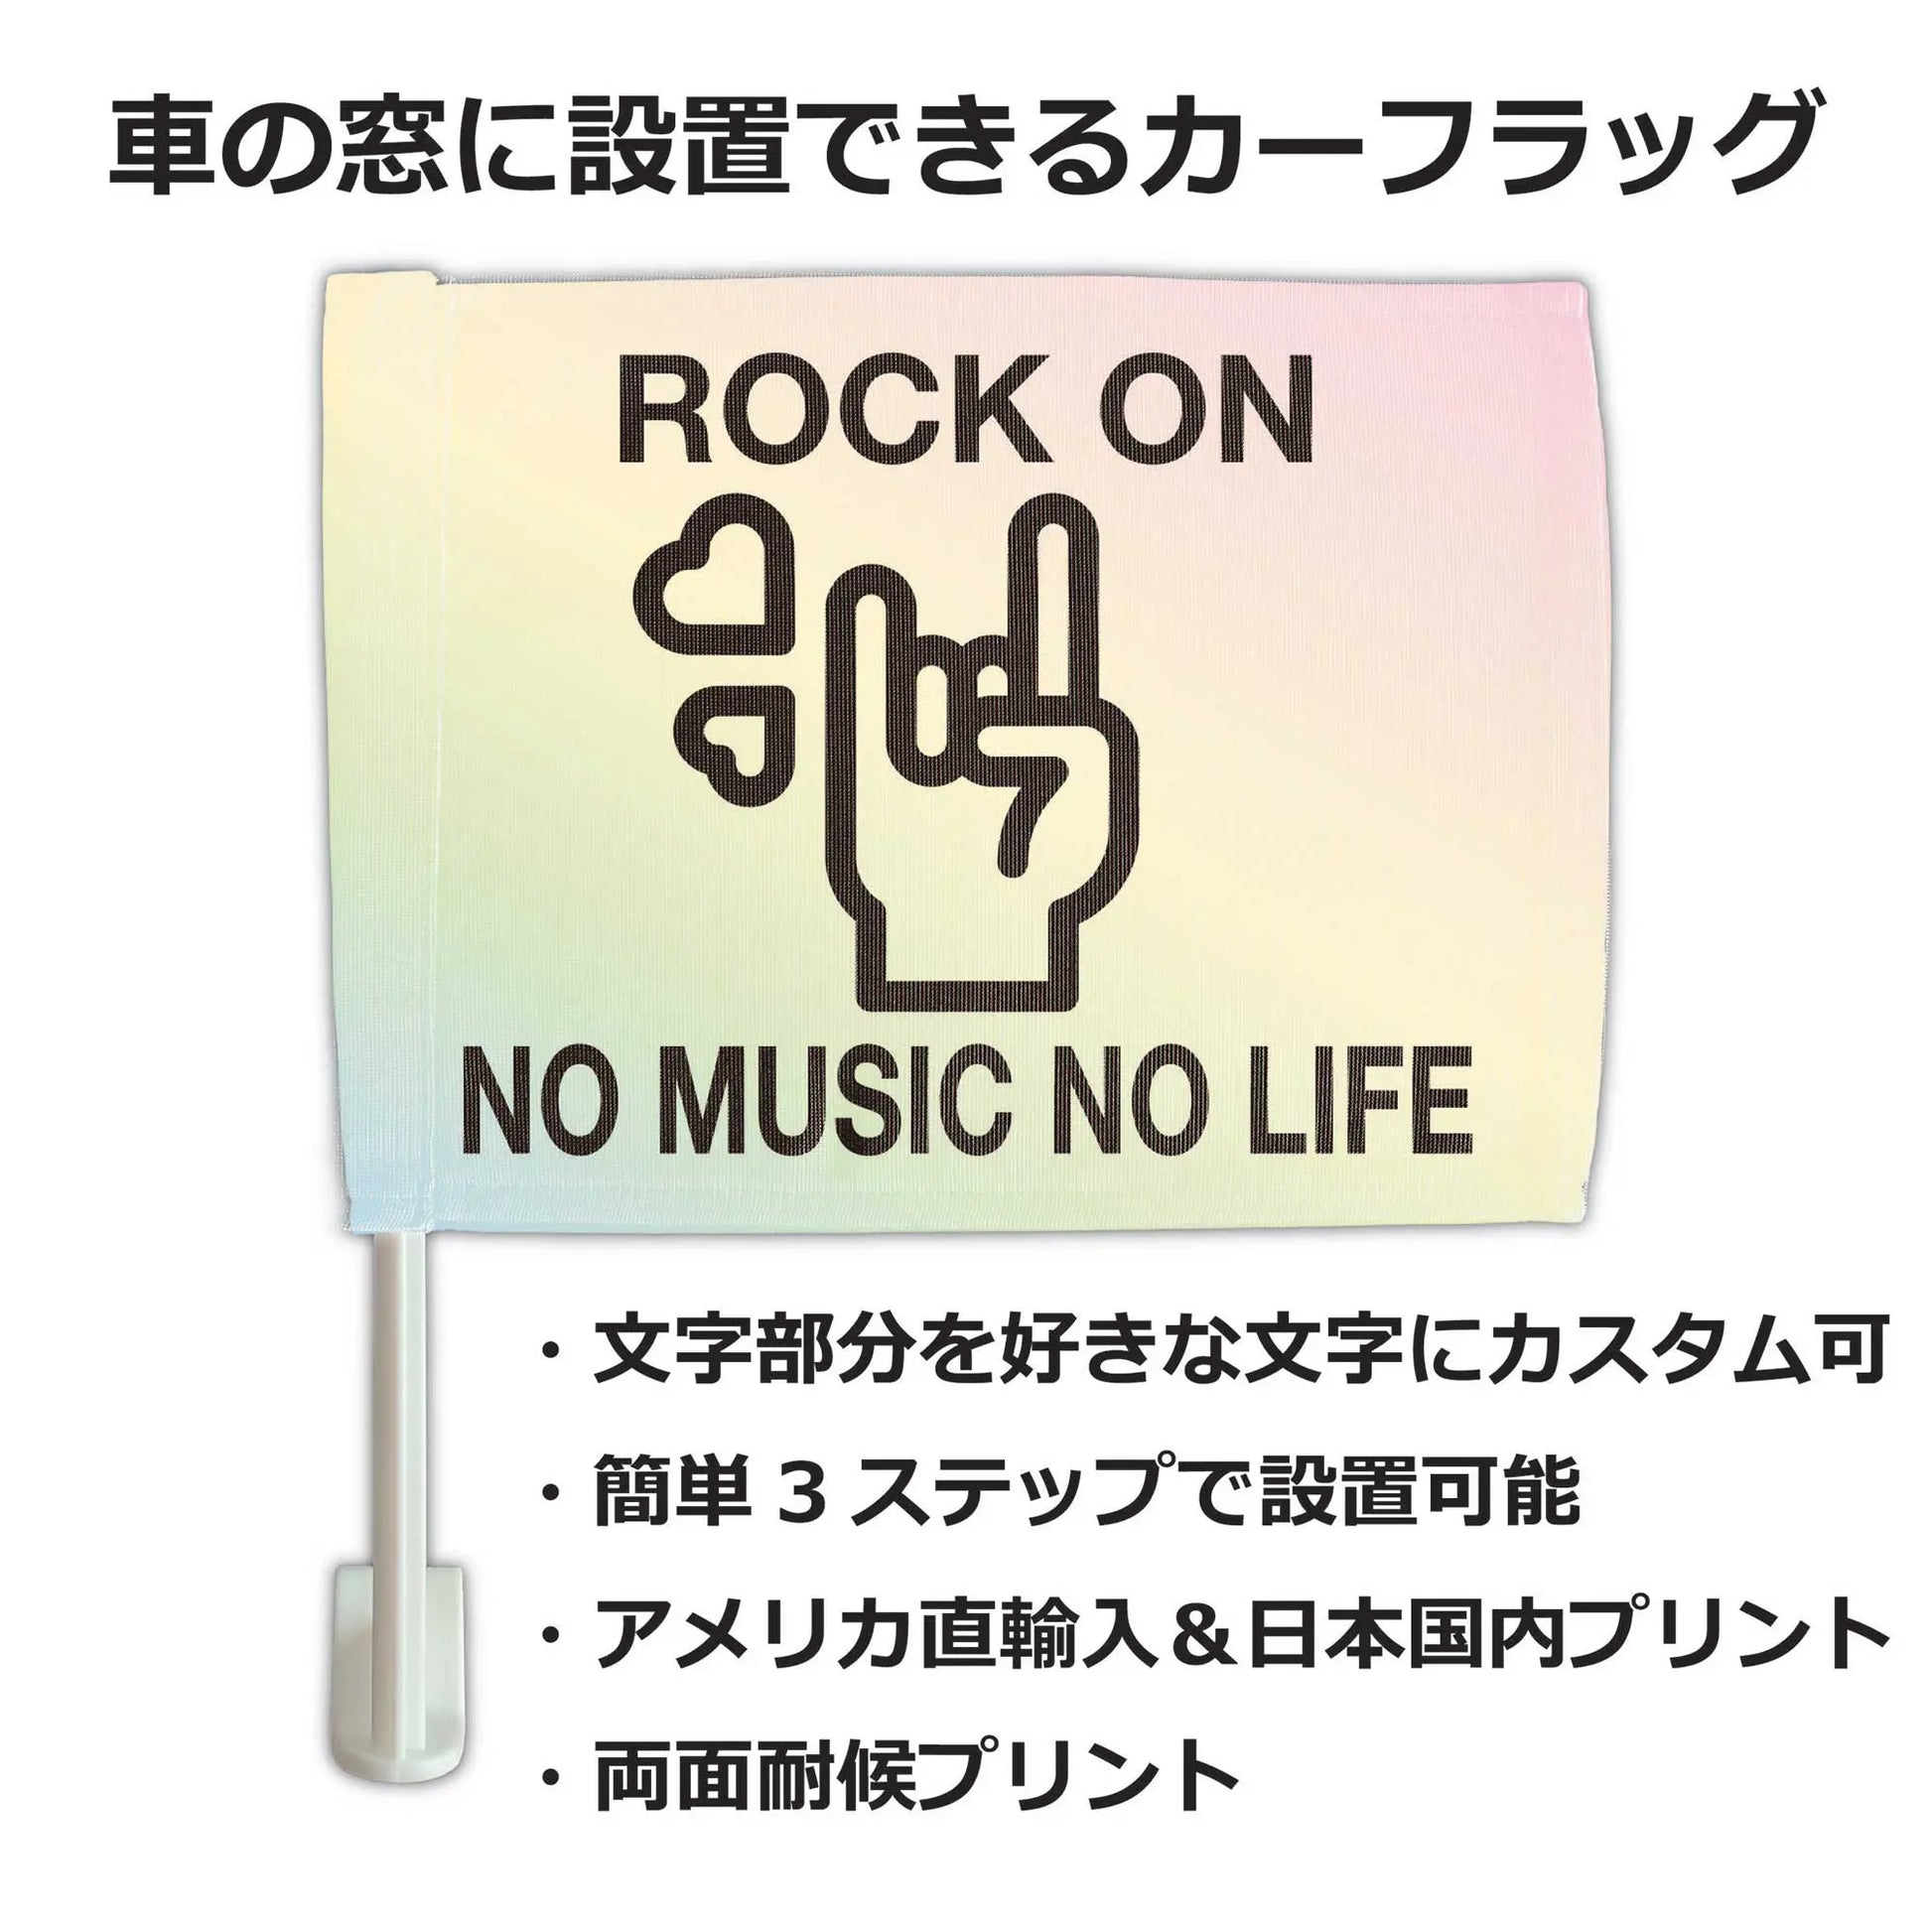 【カーフラッグ】ROCK/ロックンロール/自動車用オリジナルフラッグ・旗 PL8HERO